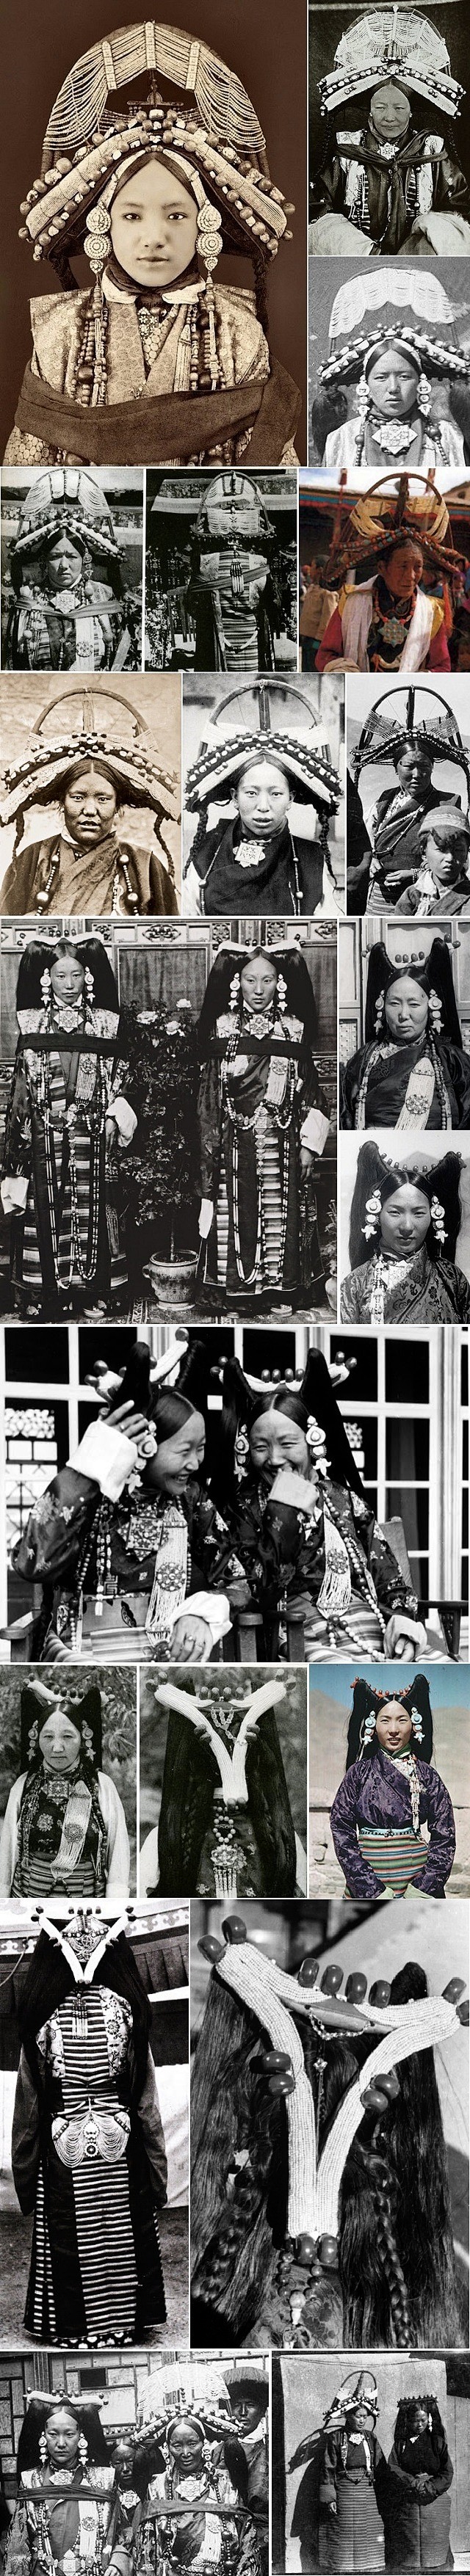 【两种有趣的藏族妇女发型】图中的照片大部...